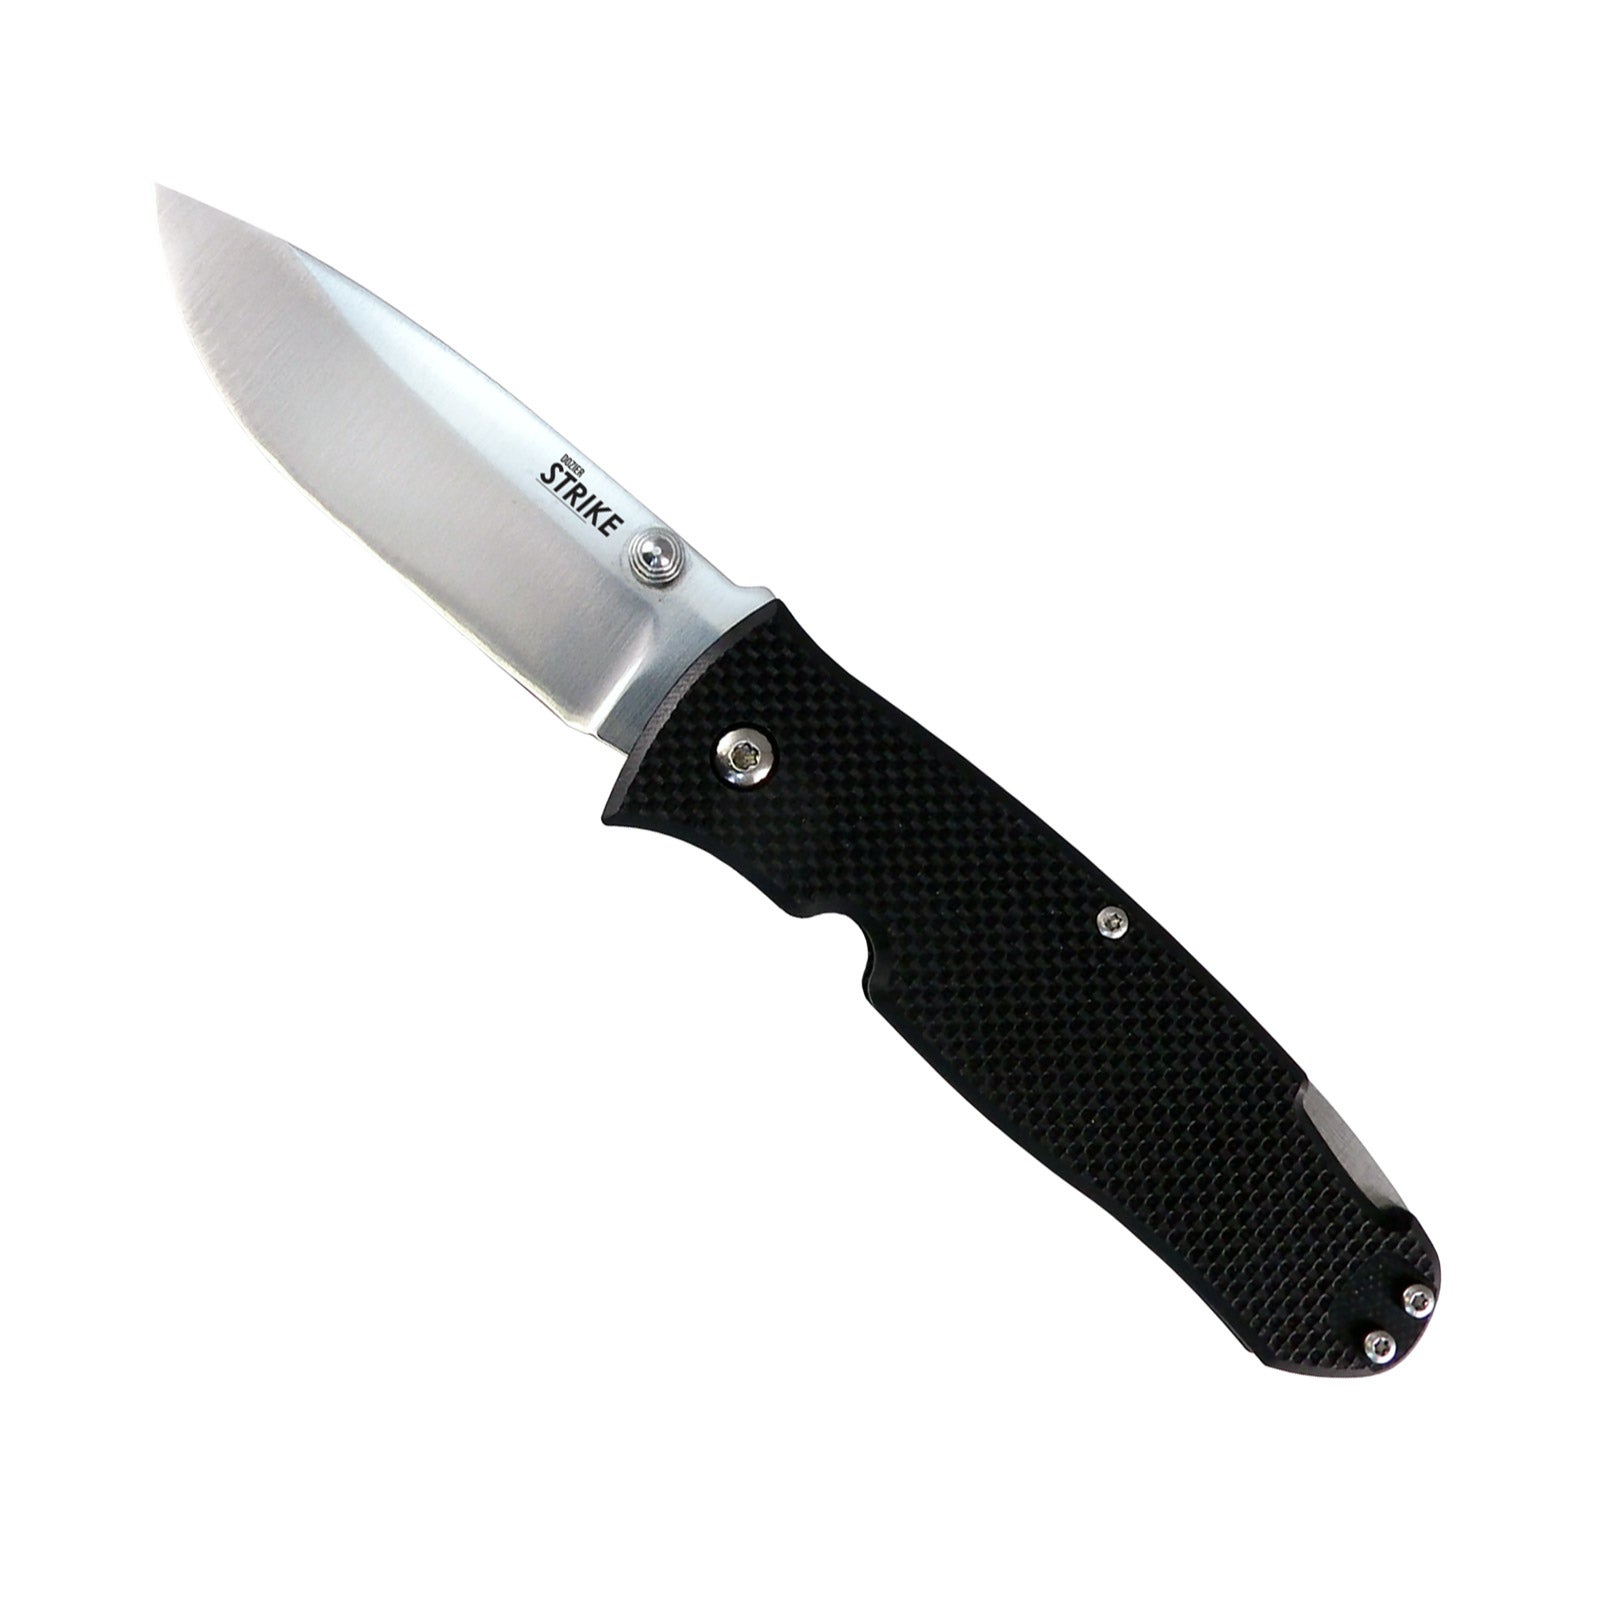 Ontario Knife Co. Dozier Strike Back Lock Folding Knife - Black / Satin